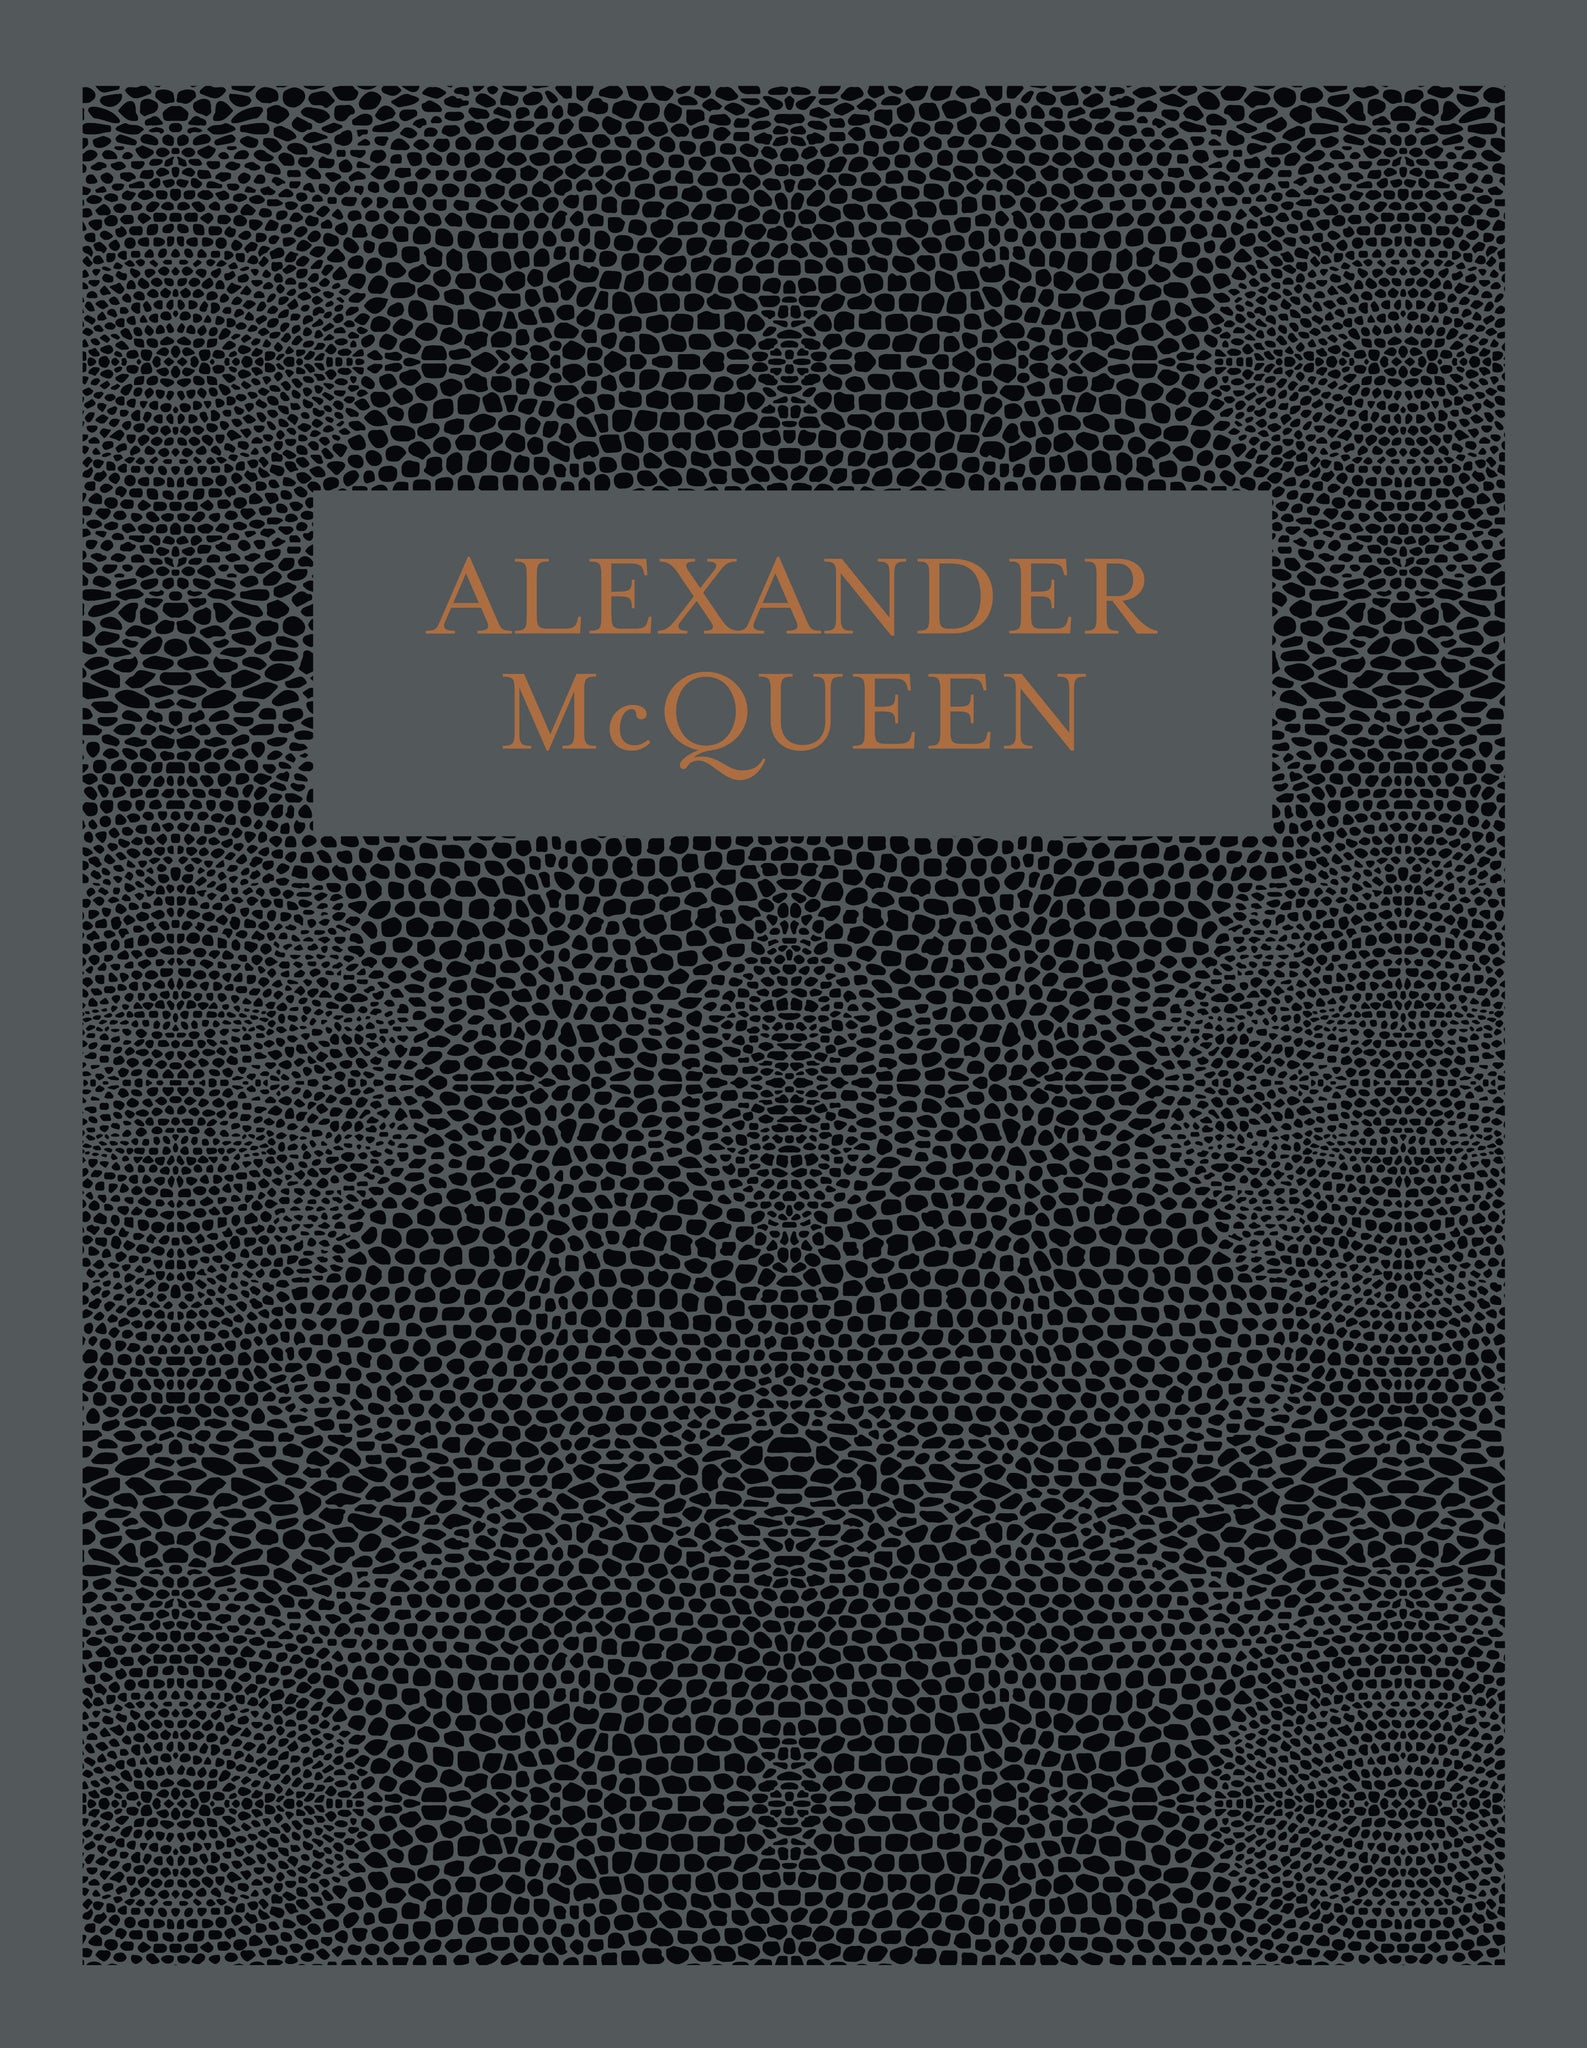 ALEXANDER MCQUEEN, coffee table book sobre moda